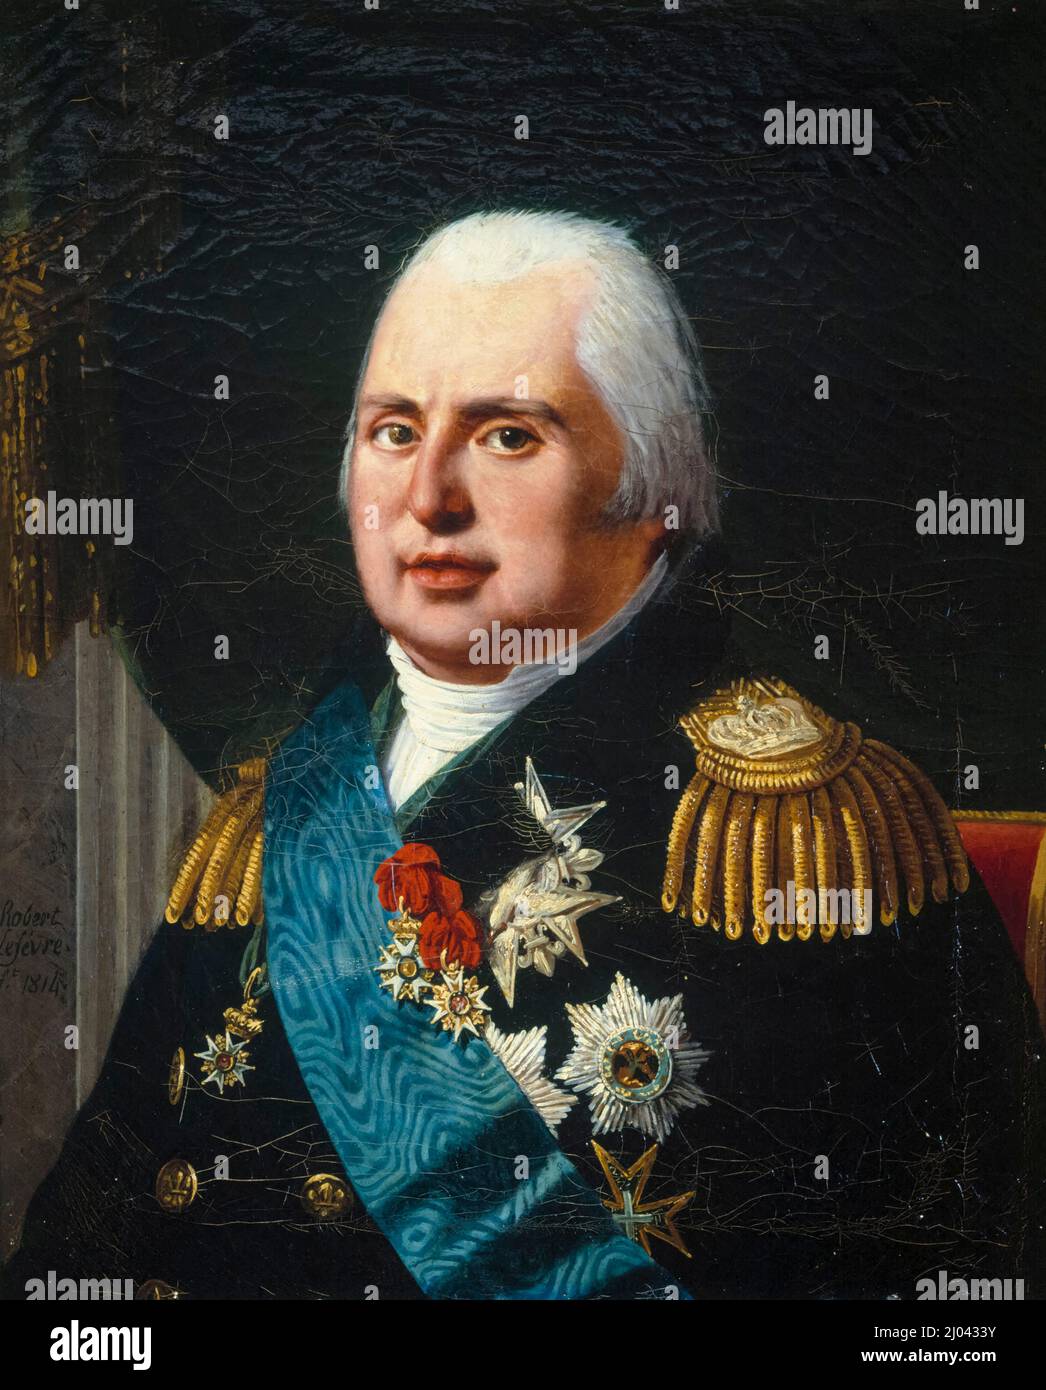 Louis XVIII (1755-1824), roi de France (1814-1824), huile sur toile, portrait peint par Robert Jacques François Lefèvre, 1814 Banque D'Images